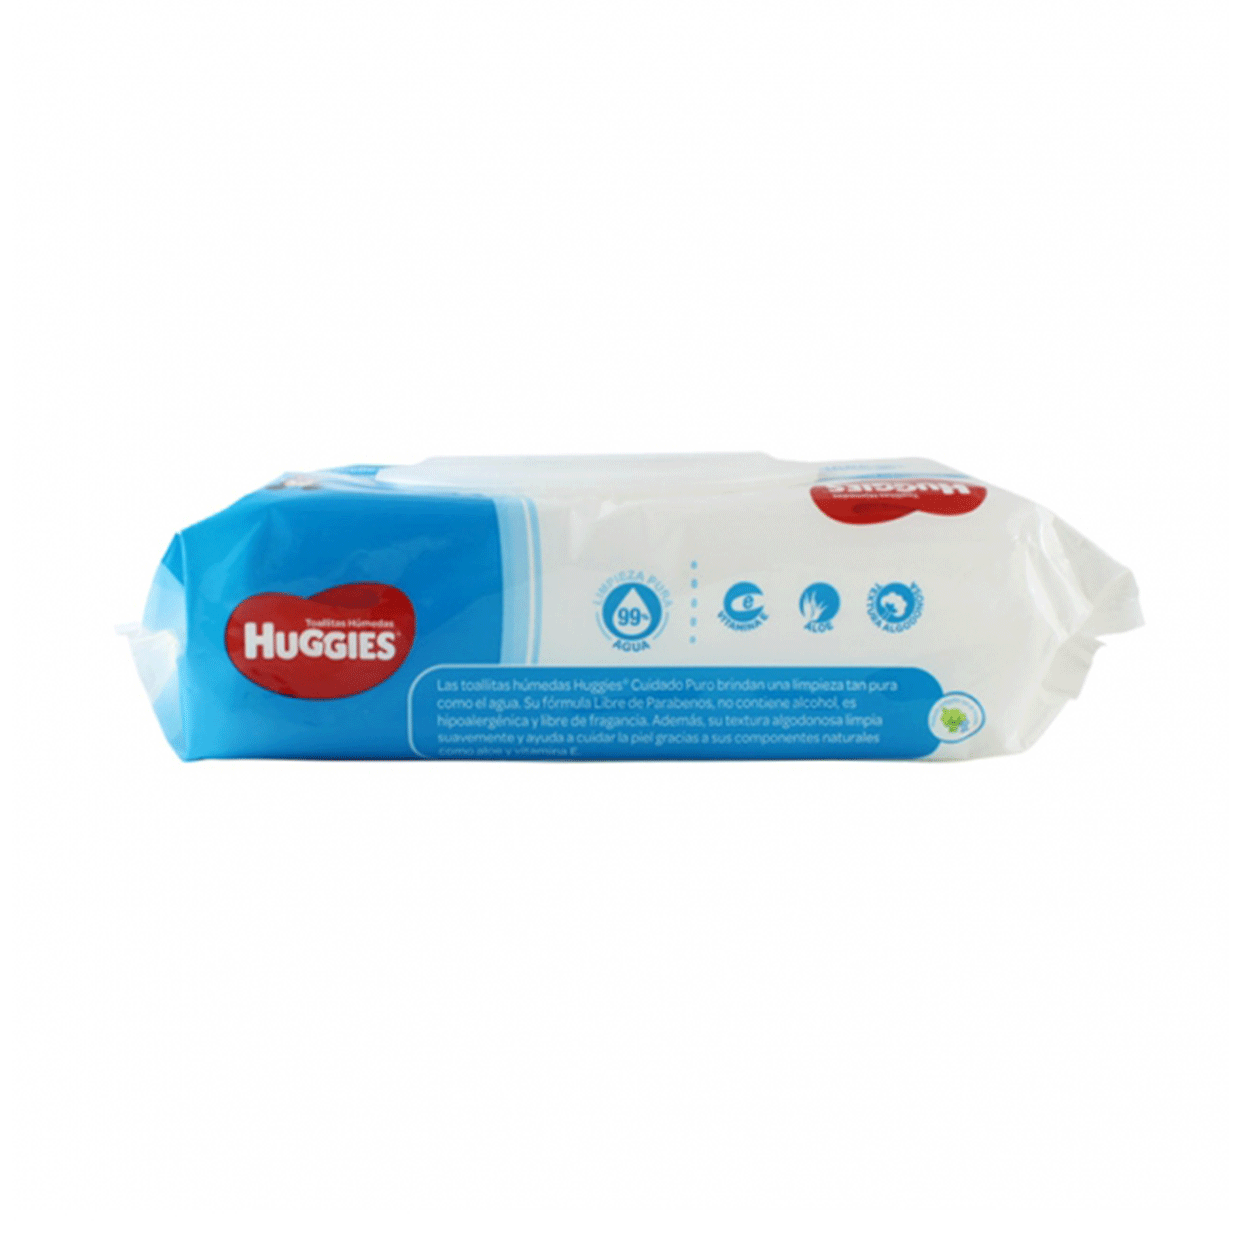 Huggies toallas humedas puro y natural x 80 unidades — Amarket